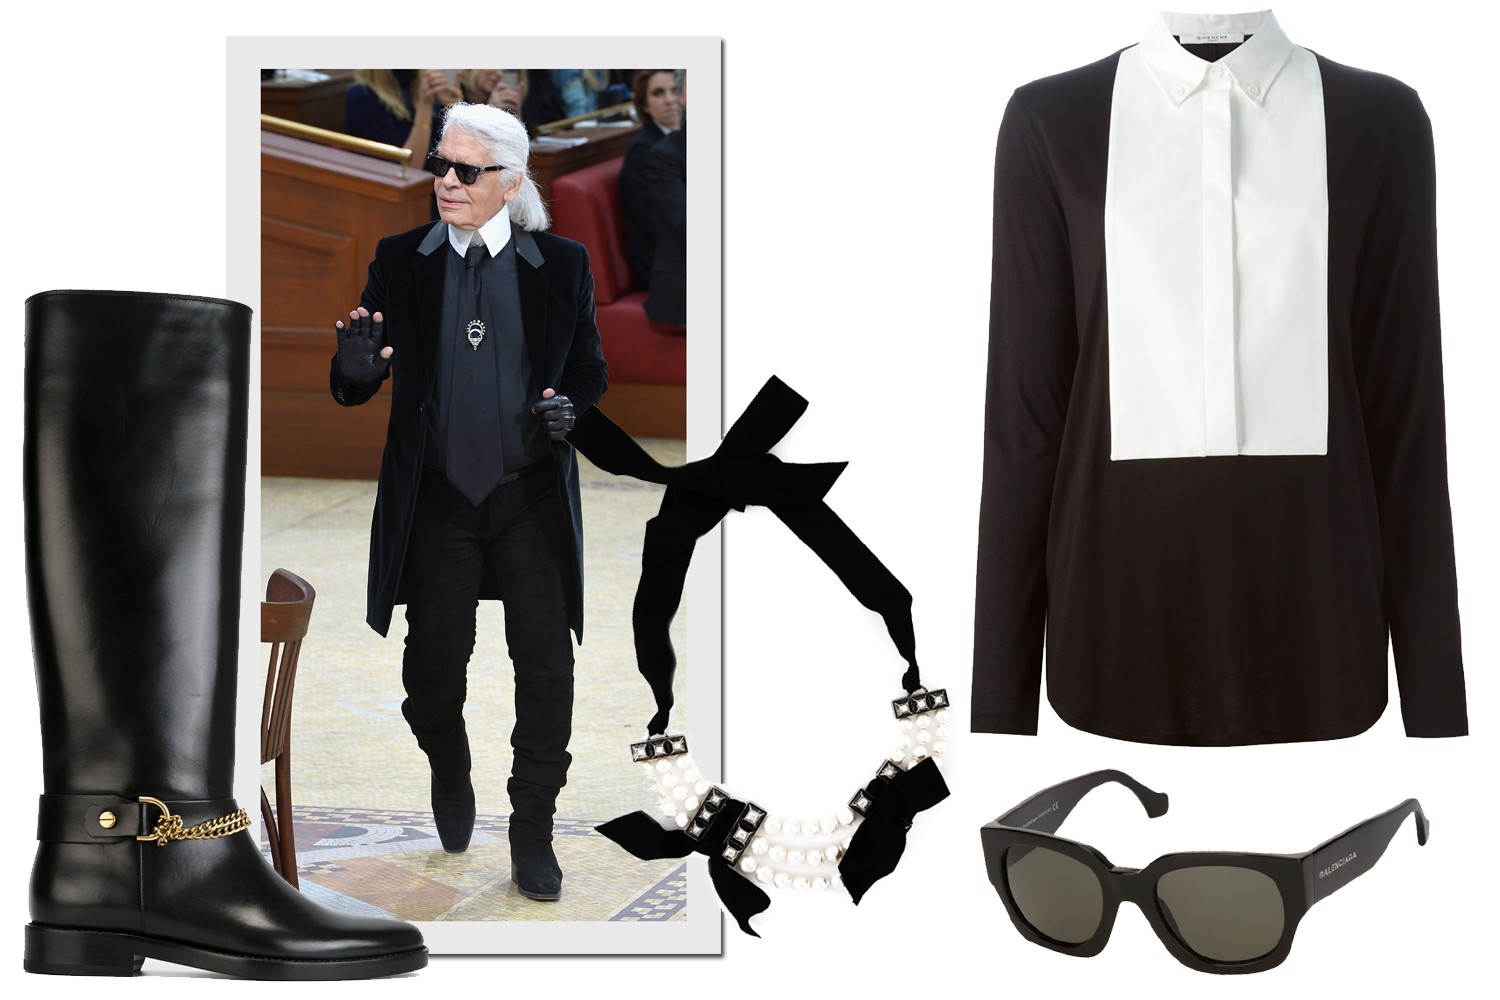 Bota, R$ 9.090 e colar, R$ 6.090, ambos Lanvin; camisa Givenchy, R$ 5.140, óculos Balenciaga, R$ 1.930, na Farfetch  